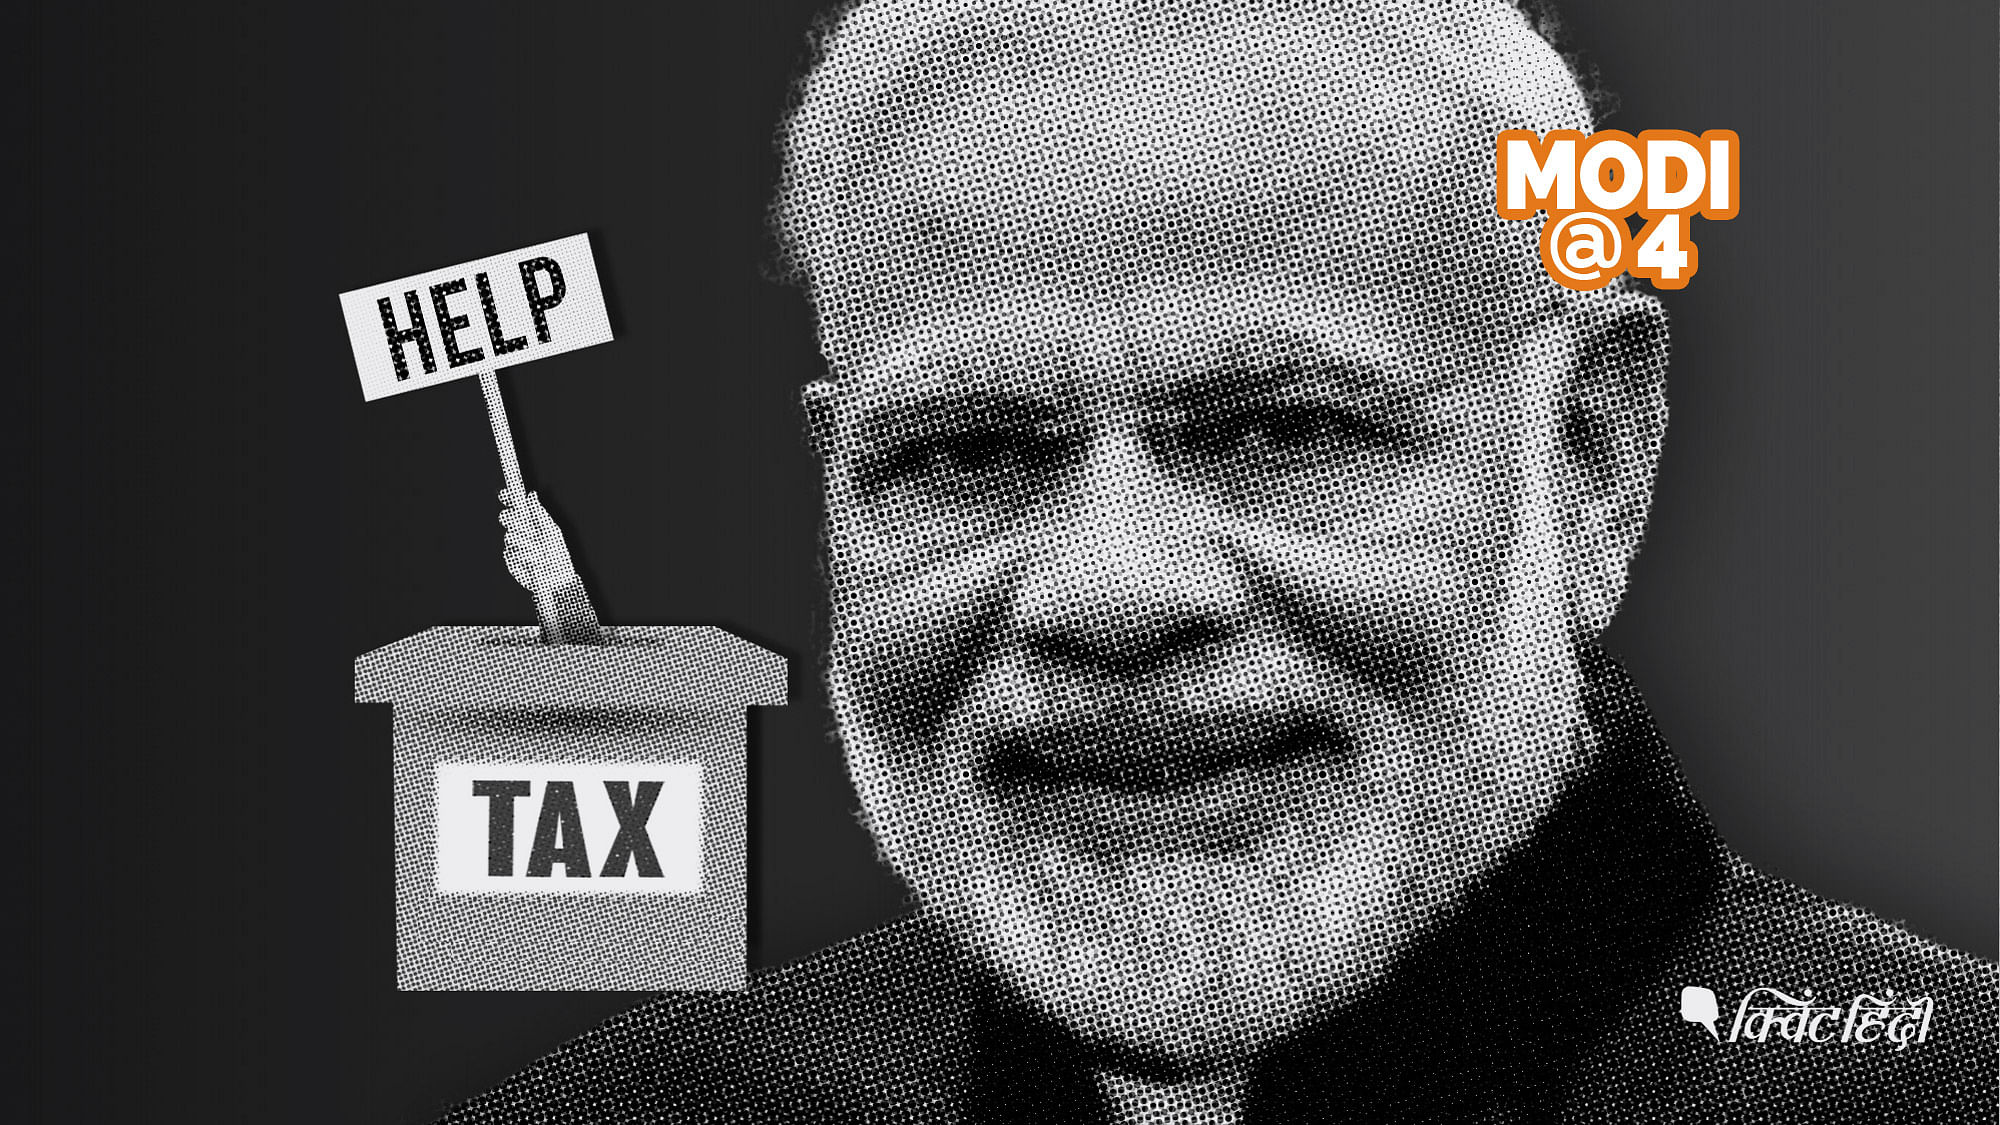 प्रधानमंत्री नरेंद्र मोदी की नजर जिधर गई उधर&nbsp; टैक्स लगने का नया सिलसिला शुरू हो गया&nbsp;